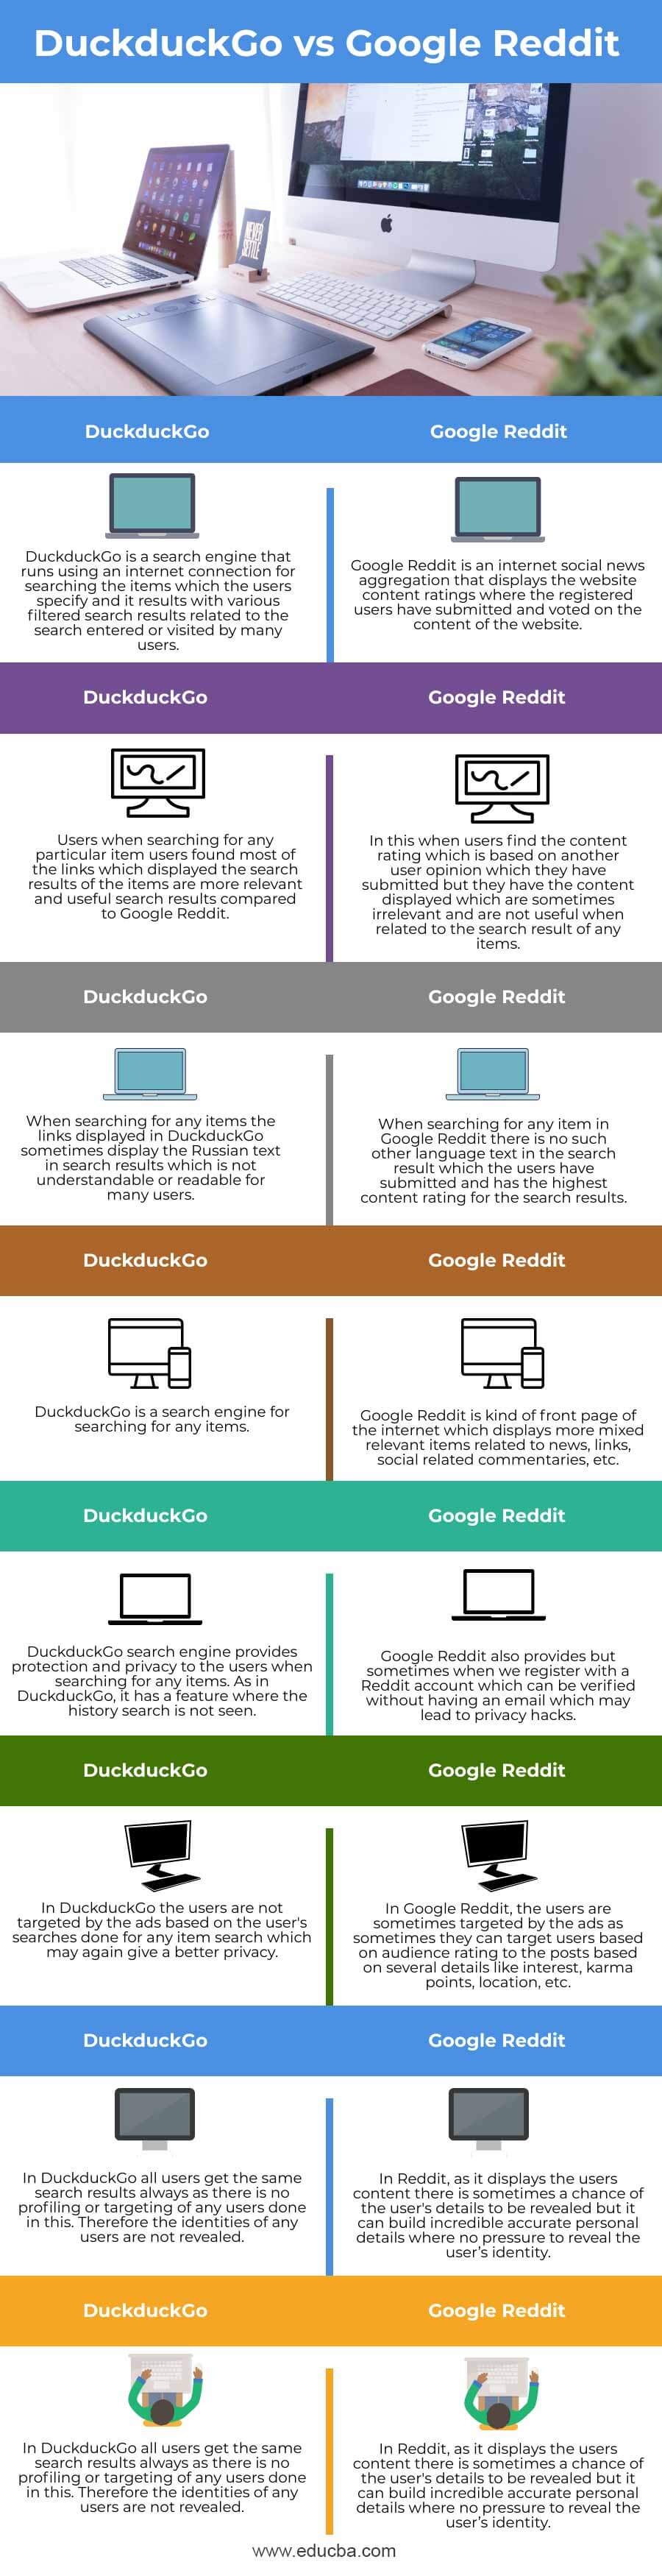 DuckduckGo-vs-Google-Reddit-info